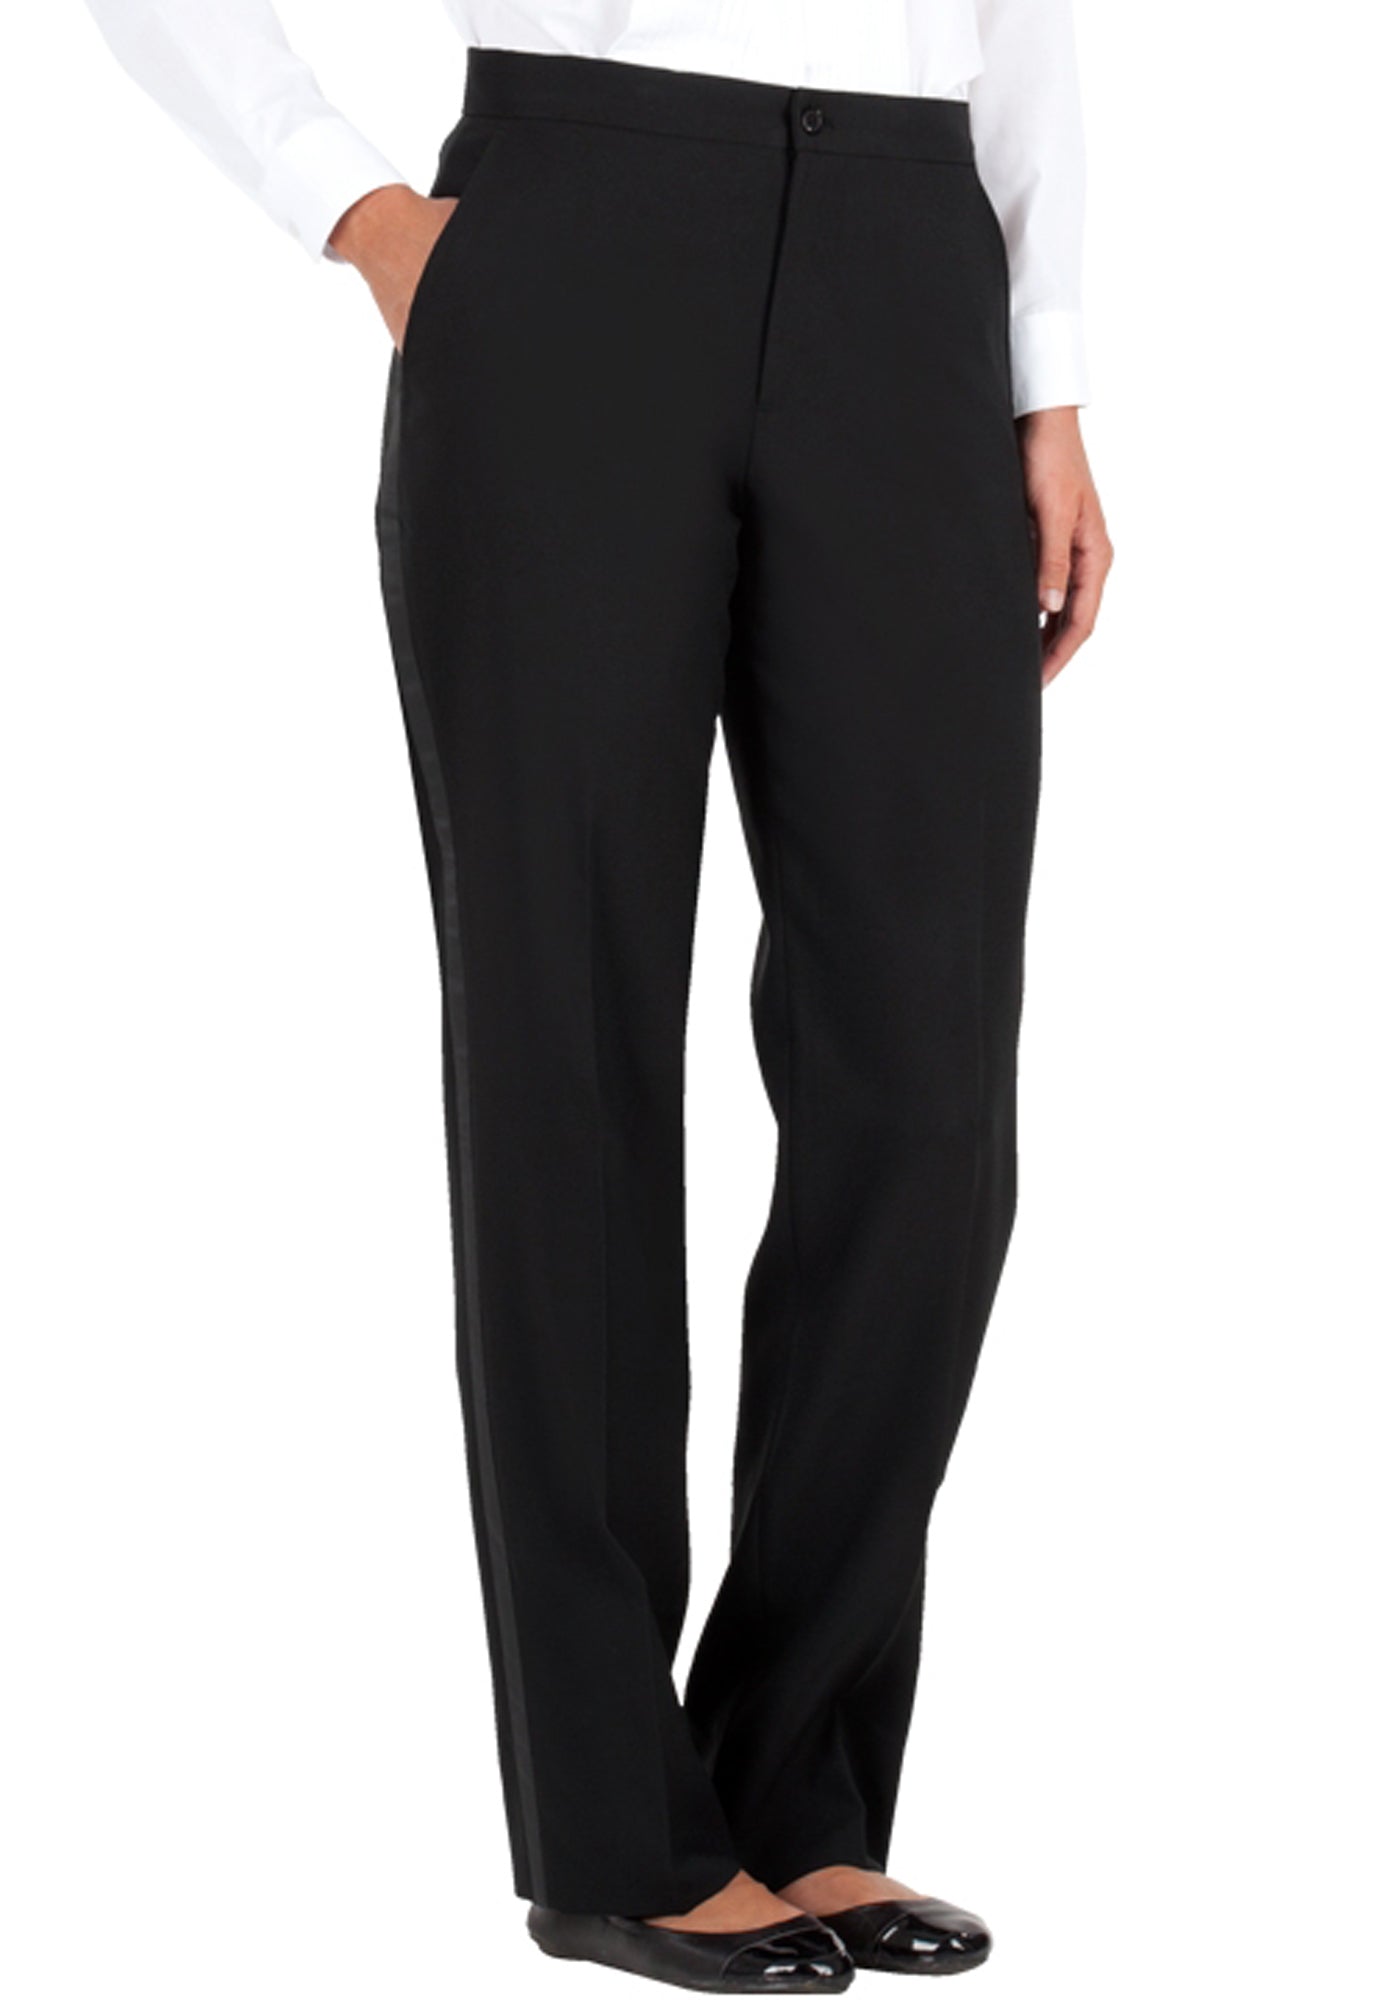 Midnight Velvet Gray Black Formal Dress Pleat Back Tuxedo Pant Suit Size 16  NEW